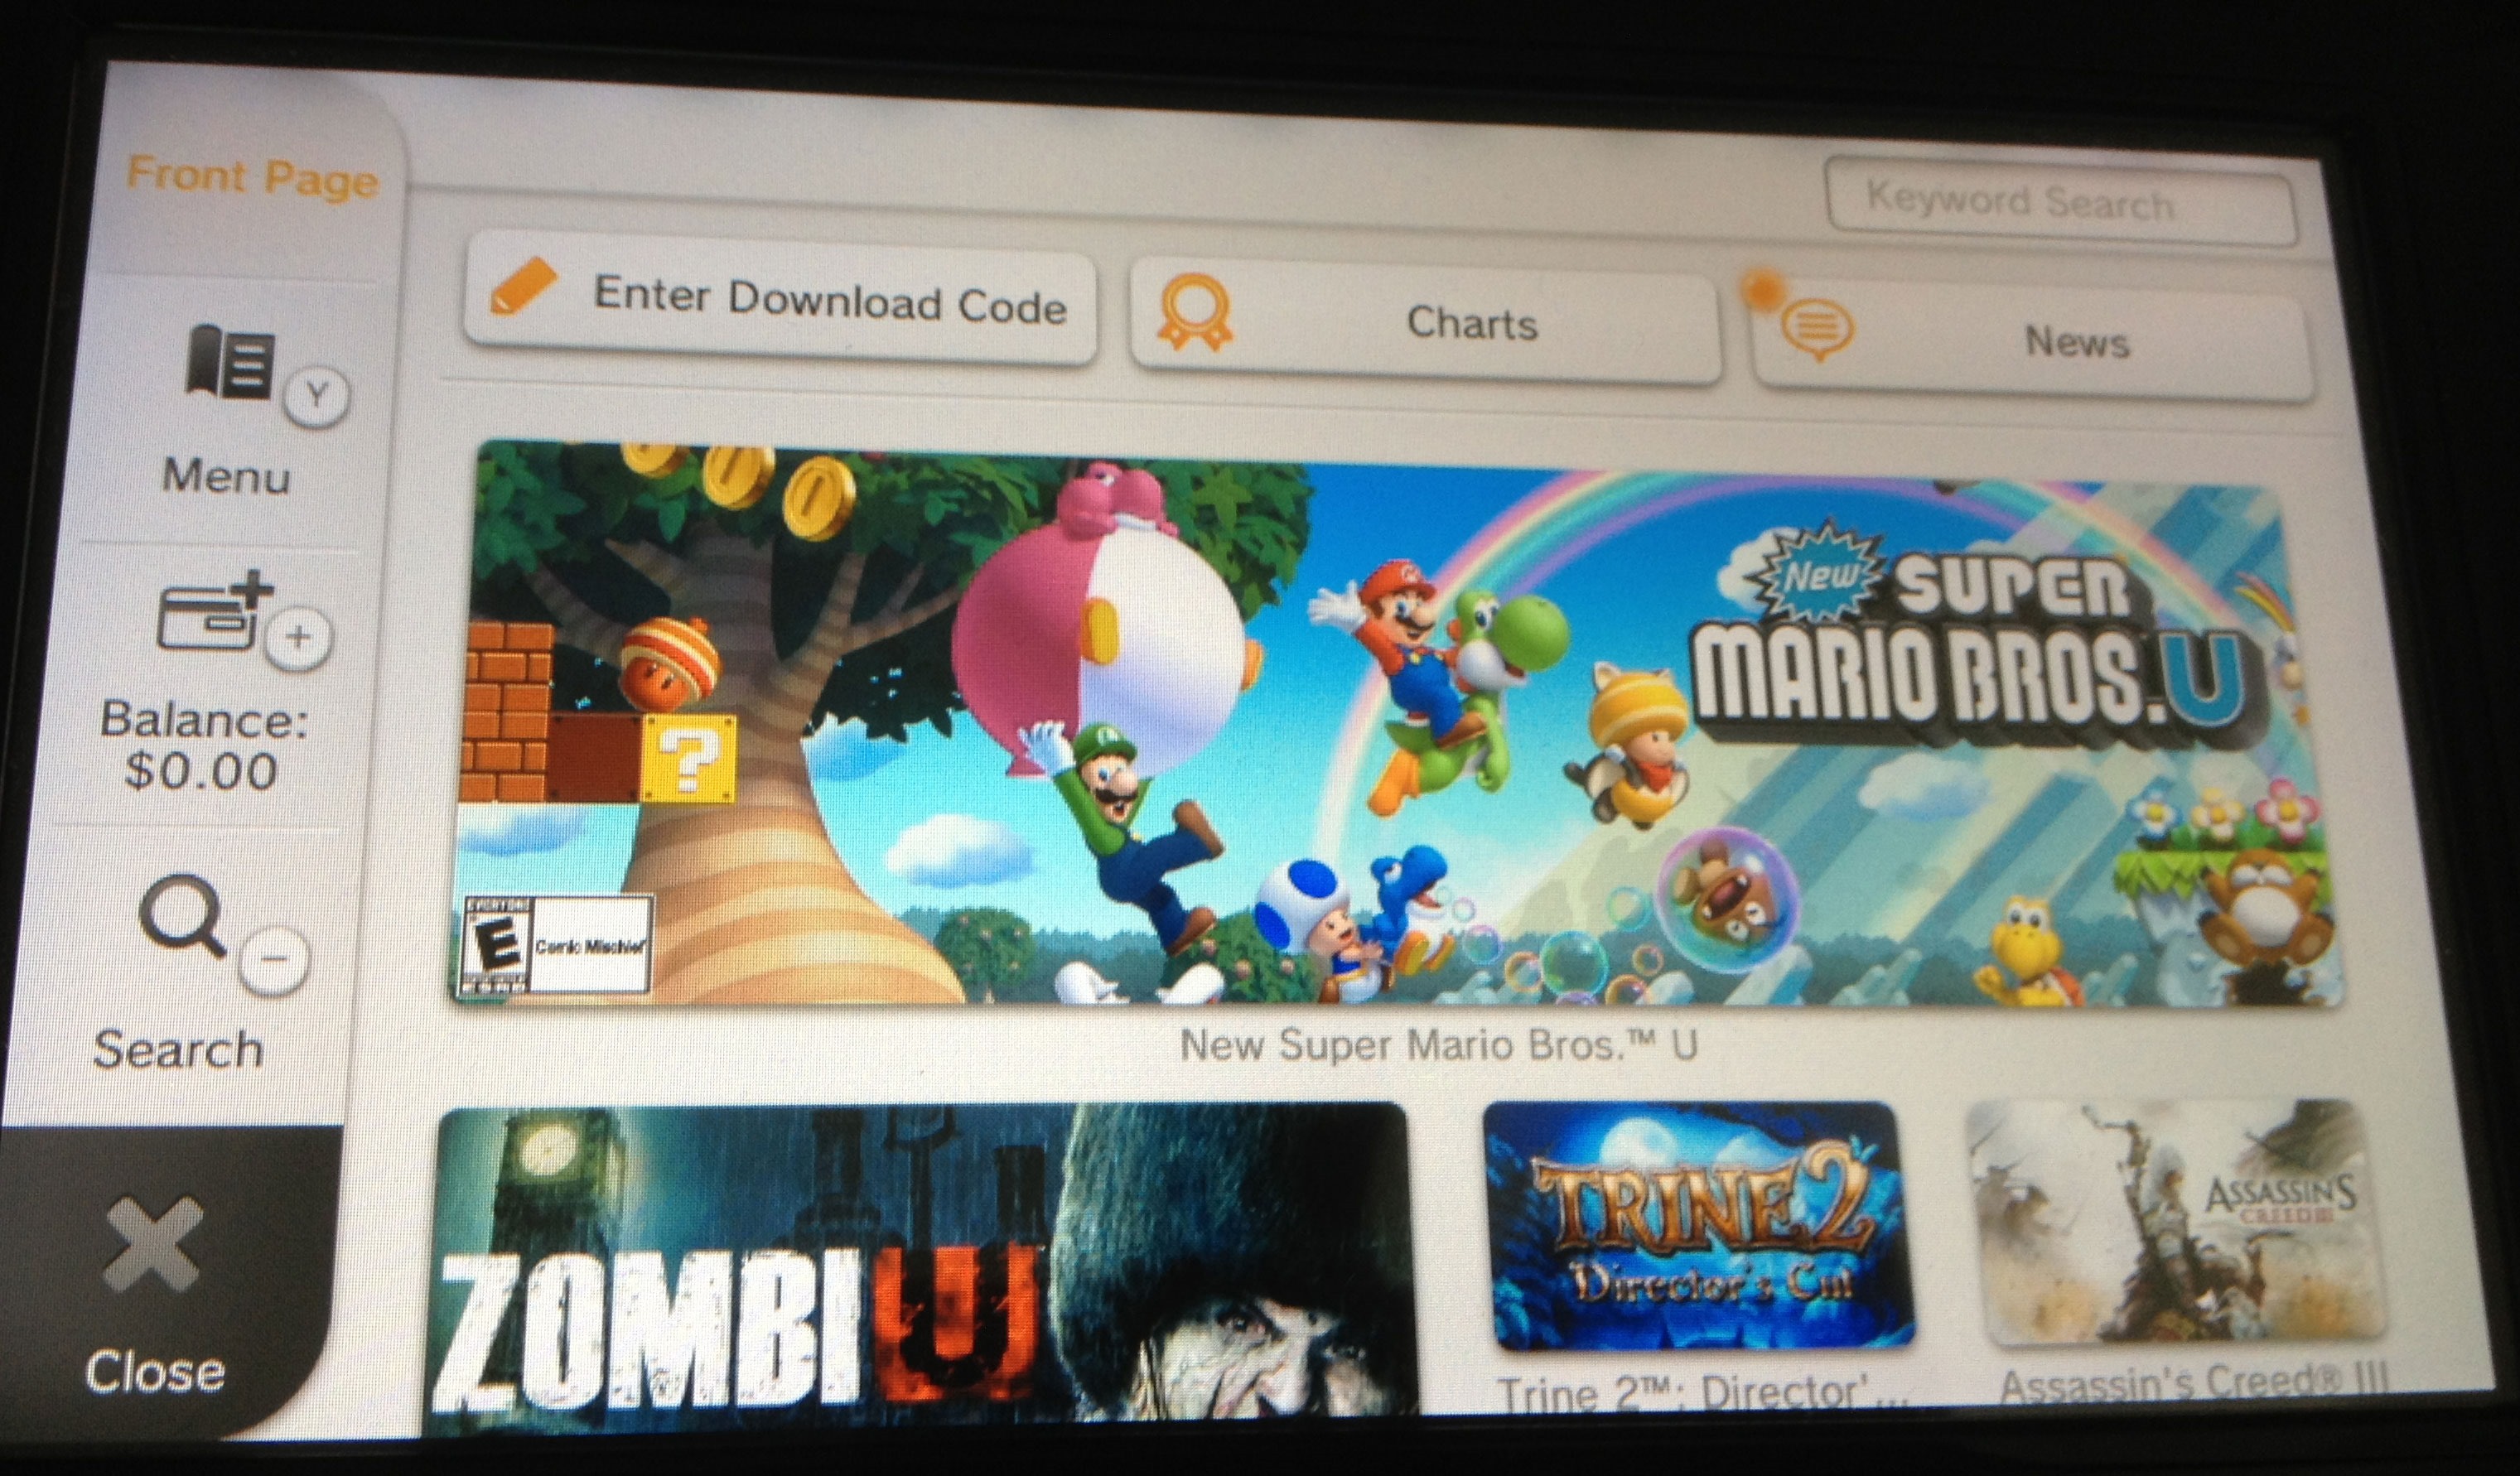 Afsnijden eerlijk krab Wii U eShop Is Live With Netflix, Mario, And $10 Indie Games - Siliconera